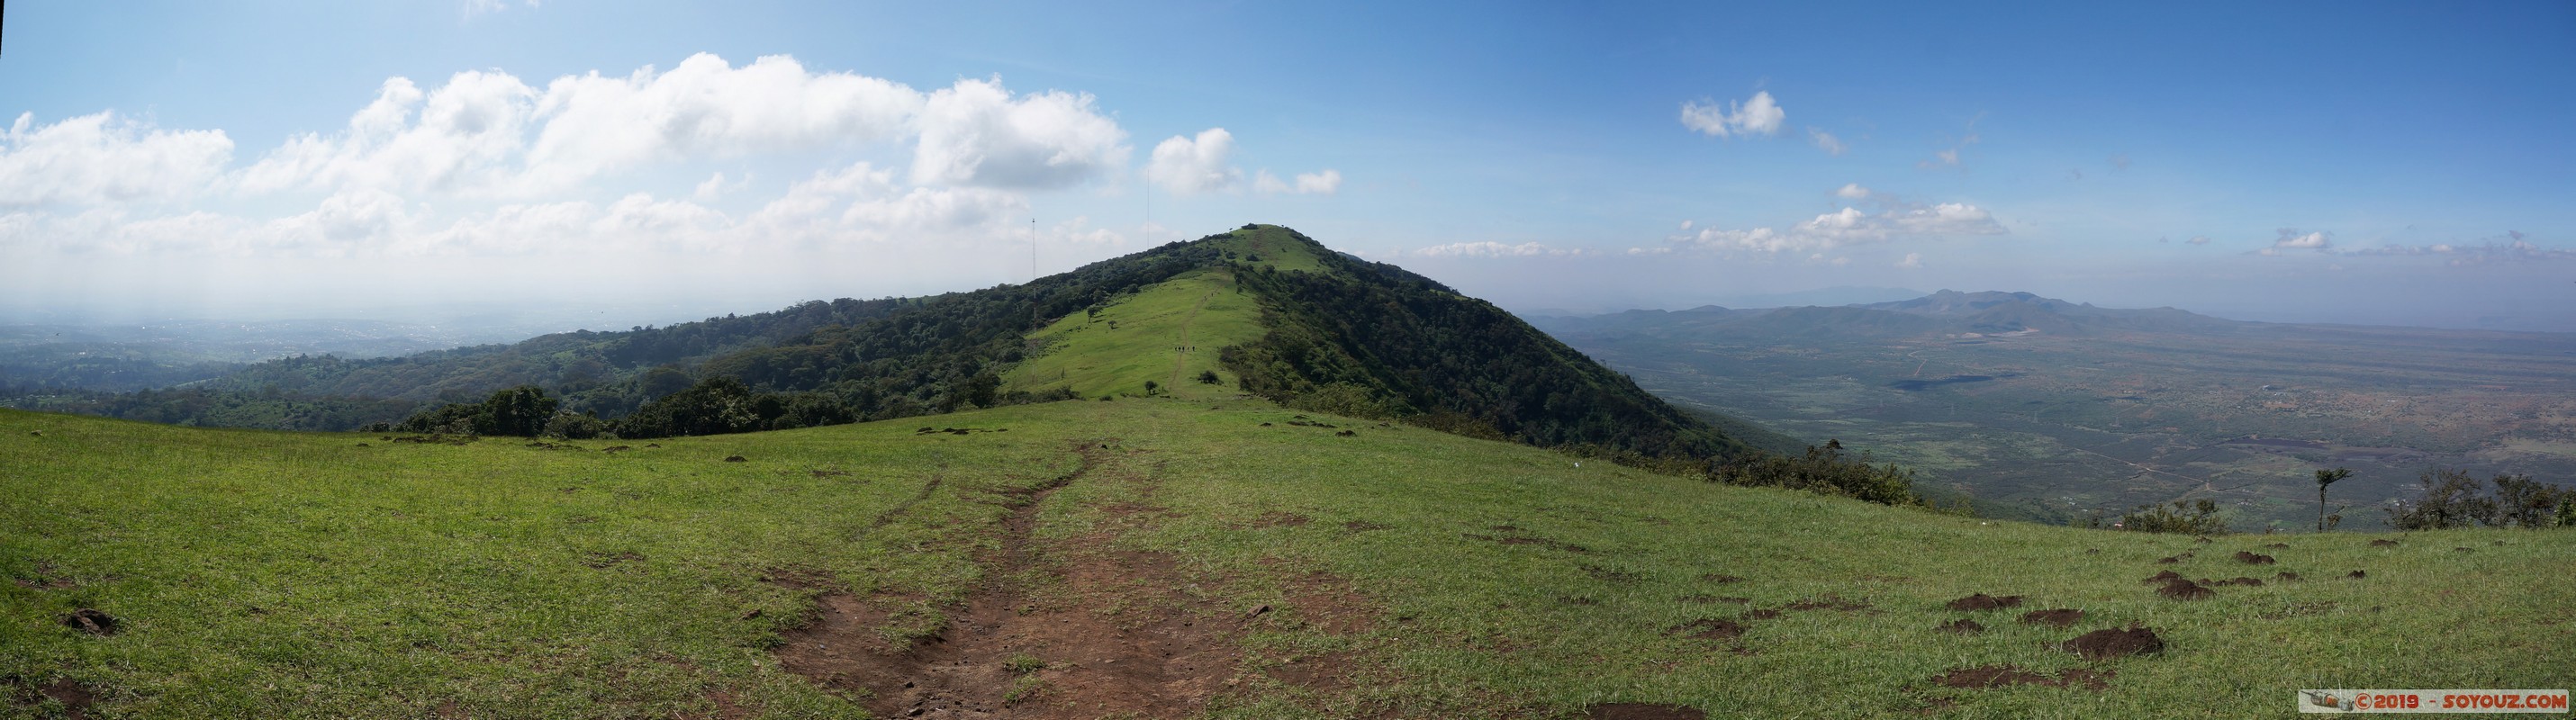 Ngong Hills - Panorama
Mots-clés: Kajiado KEN Kenya Matathia Ngong Hills panorama